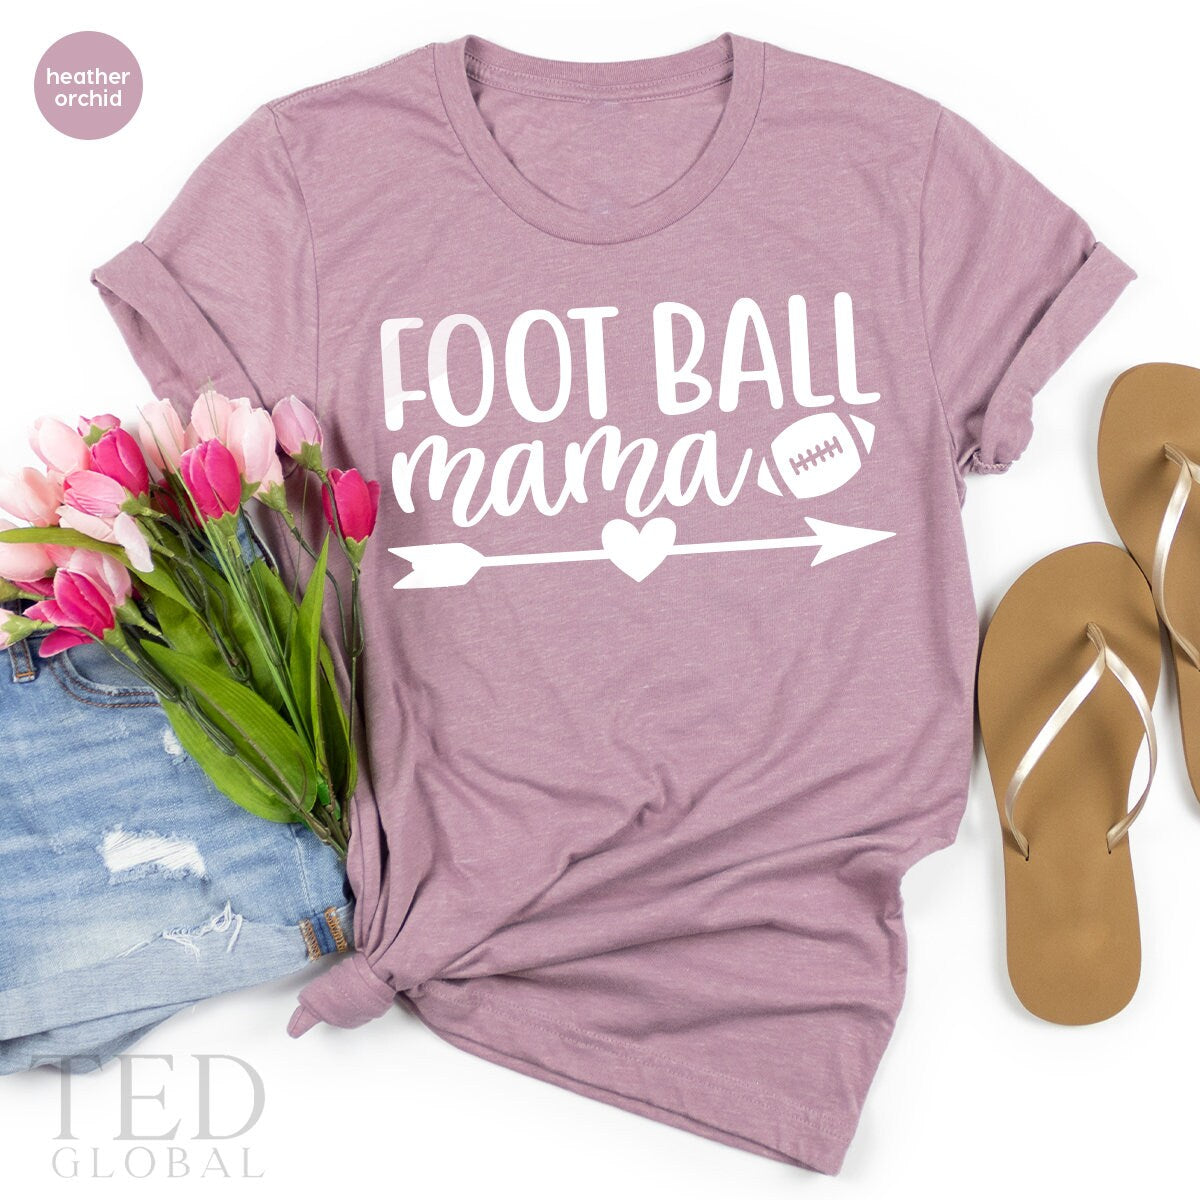 Football Mom TShirts, Football Mama T Shirt, Game Days Shirt, Cheer Mom Shirt, Football Team Shirt, Sports Mom Shirt, American Football Tee - Fastdeliverytees.com